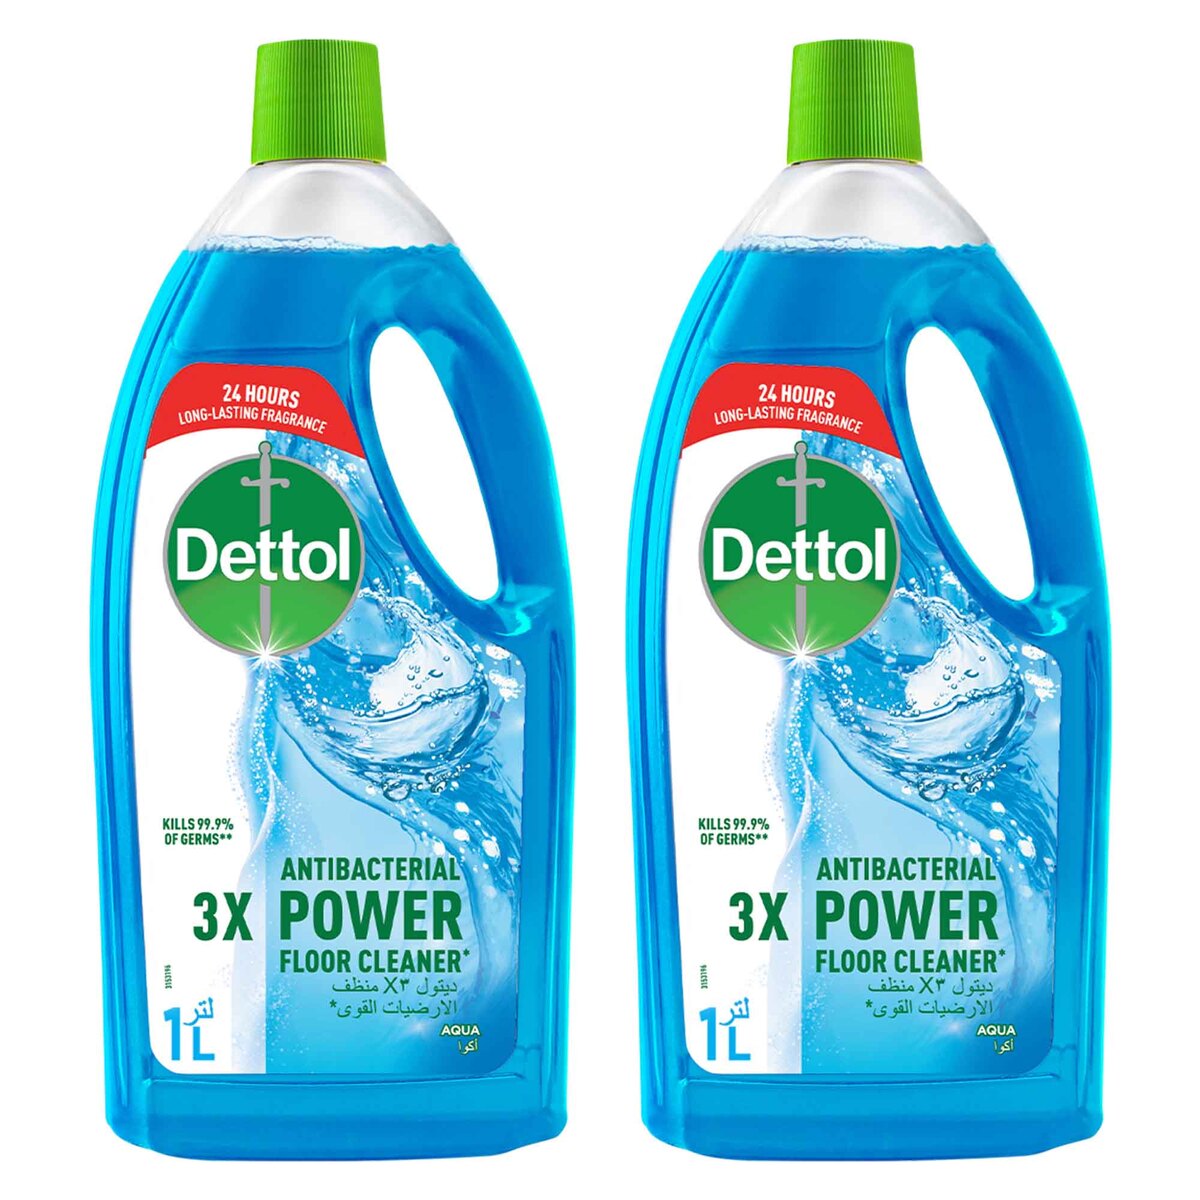 Dettol Anti-Bacterial Power Floor Cleaner Aqua 2 x 1 Litre